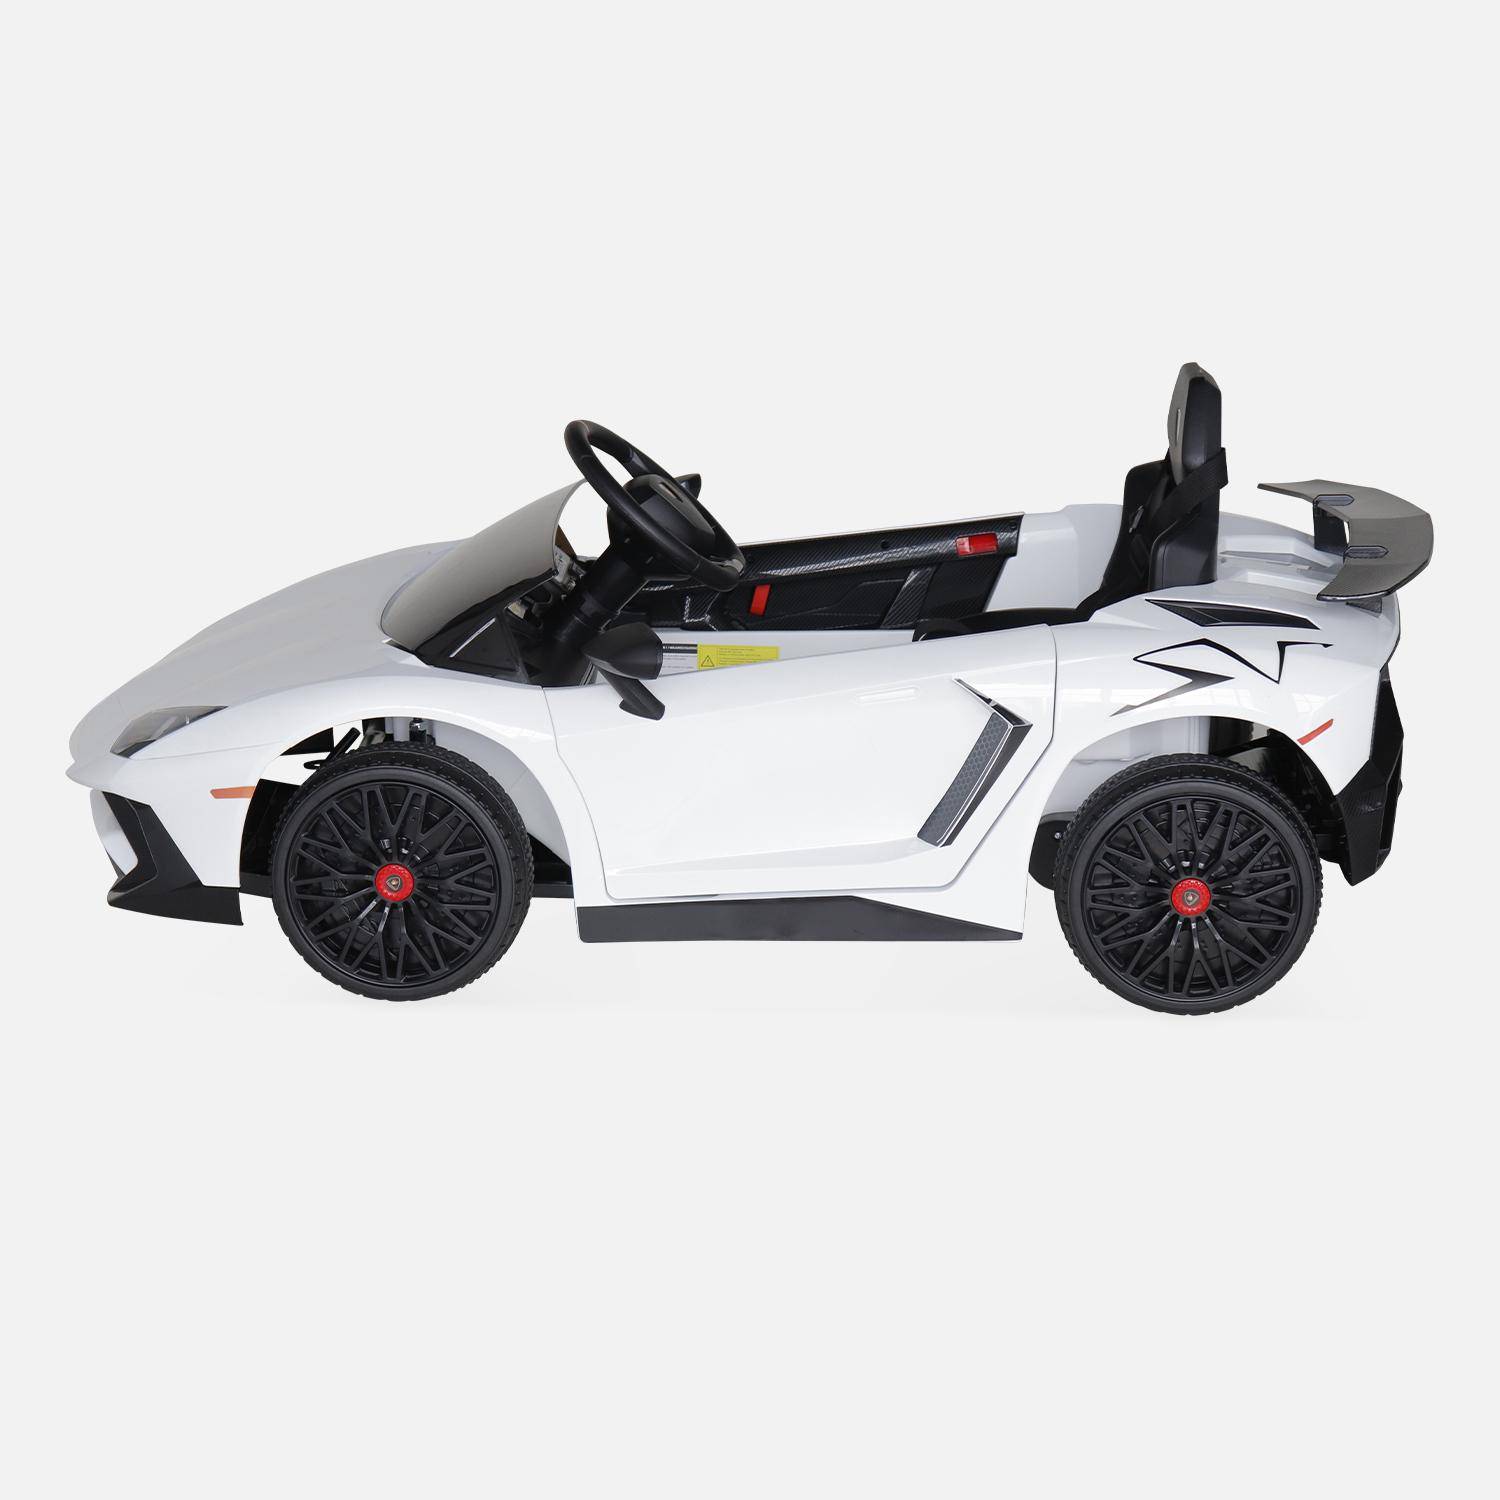 12V Lamborghini elektrische kinderauto, wit, 1 zitplaats, met autoradio, afstandsbediening, MP3, USB-poort en koplampen. Snelle levering, 2 jaar garantie. Photo5